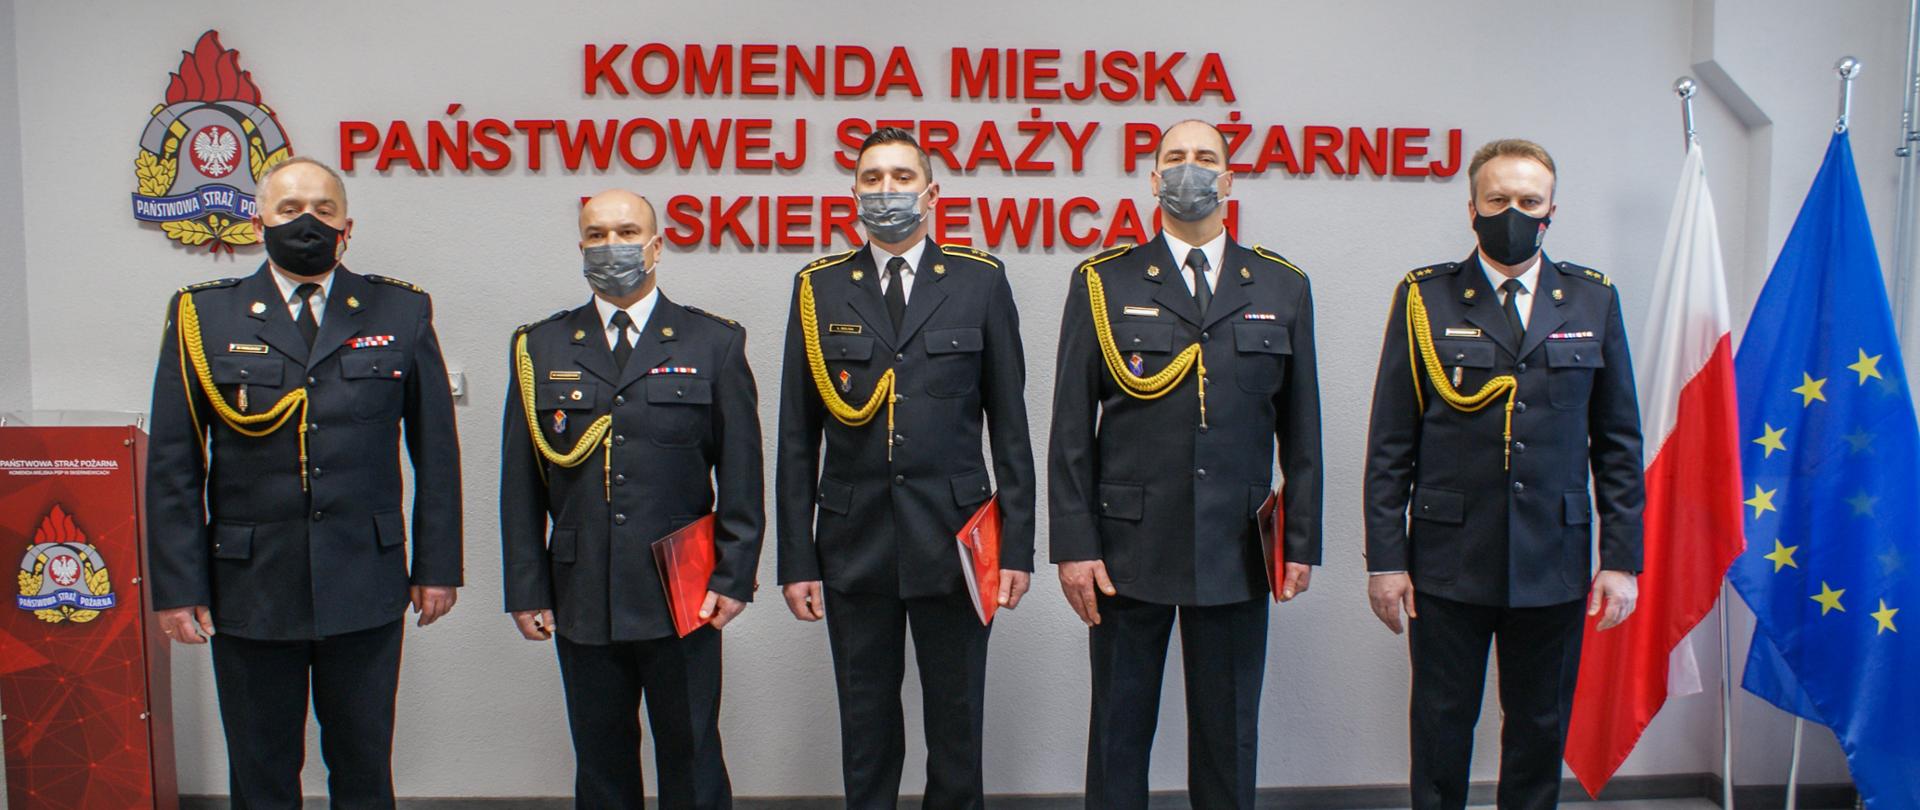 Zdjęcie przedstawia pięciu strażaków komendy miejskiej w mundurach wyjściowych koloru czarnego na tle czerwonego napisu Komenda Miejska Państwowej Straży Pożarnej w Skierniewicach, loga psp, flag polski i unii europejskiej oraz godła państwowego. 